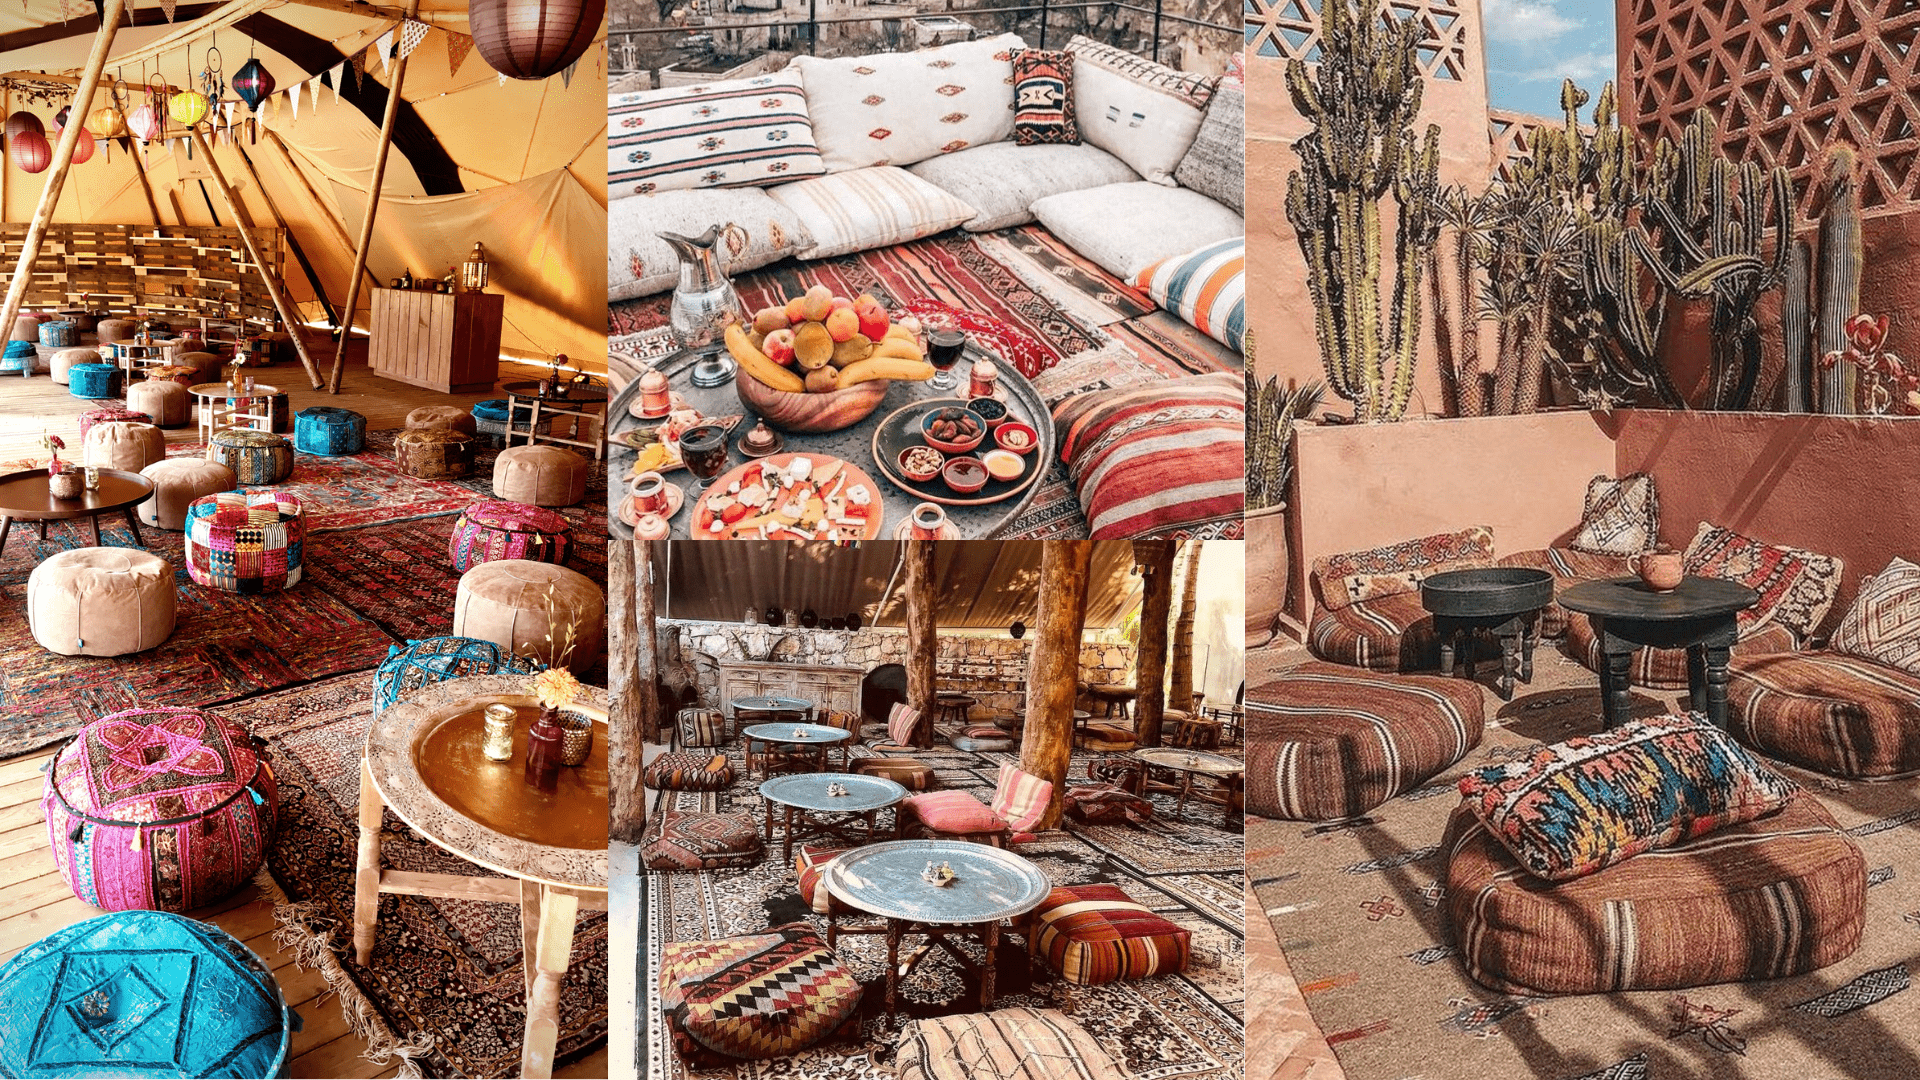 Salon de jardin marocain